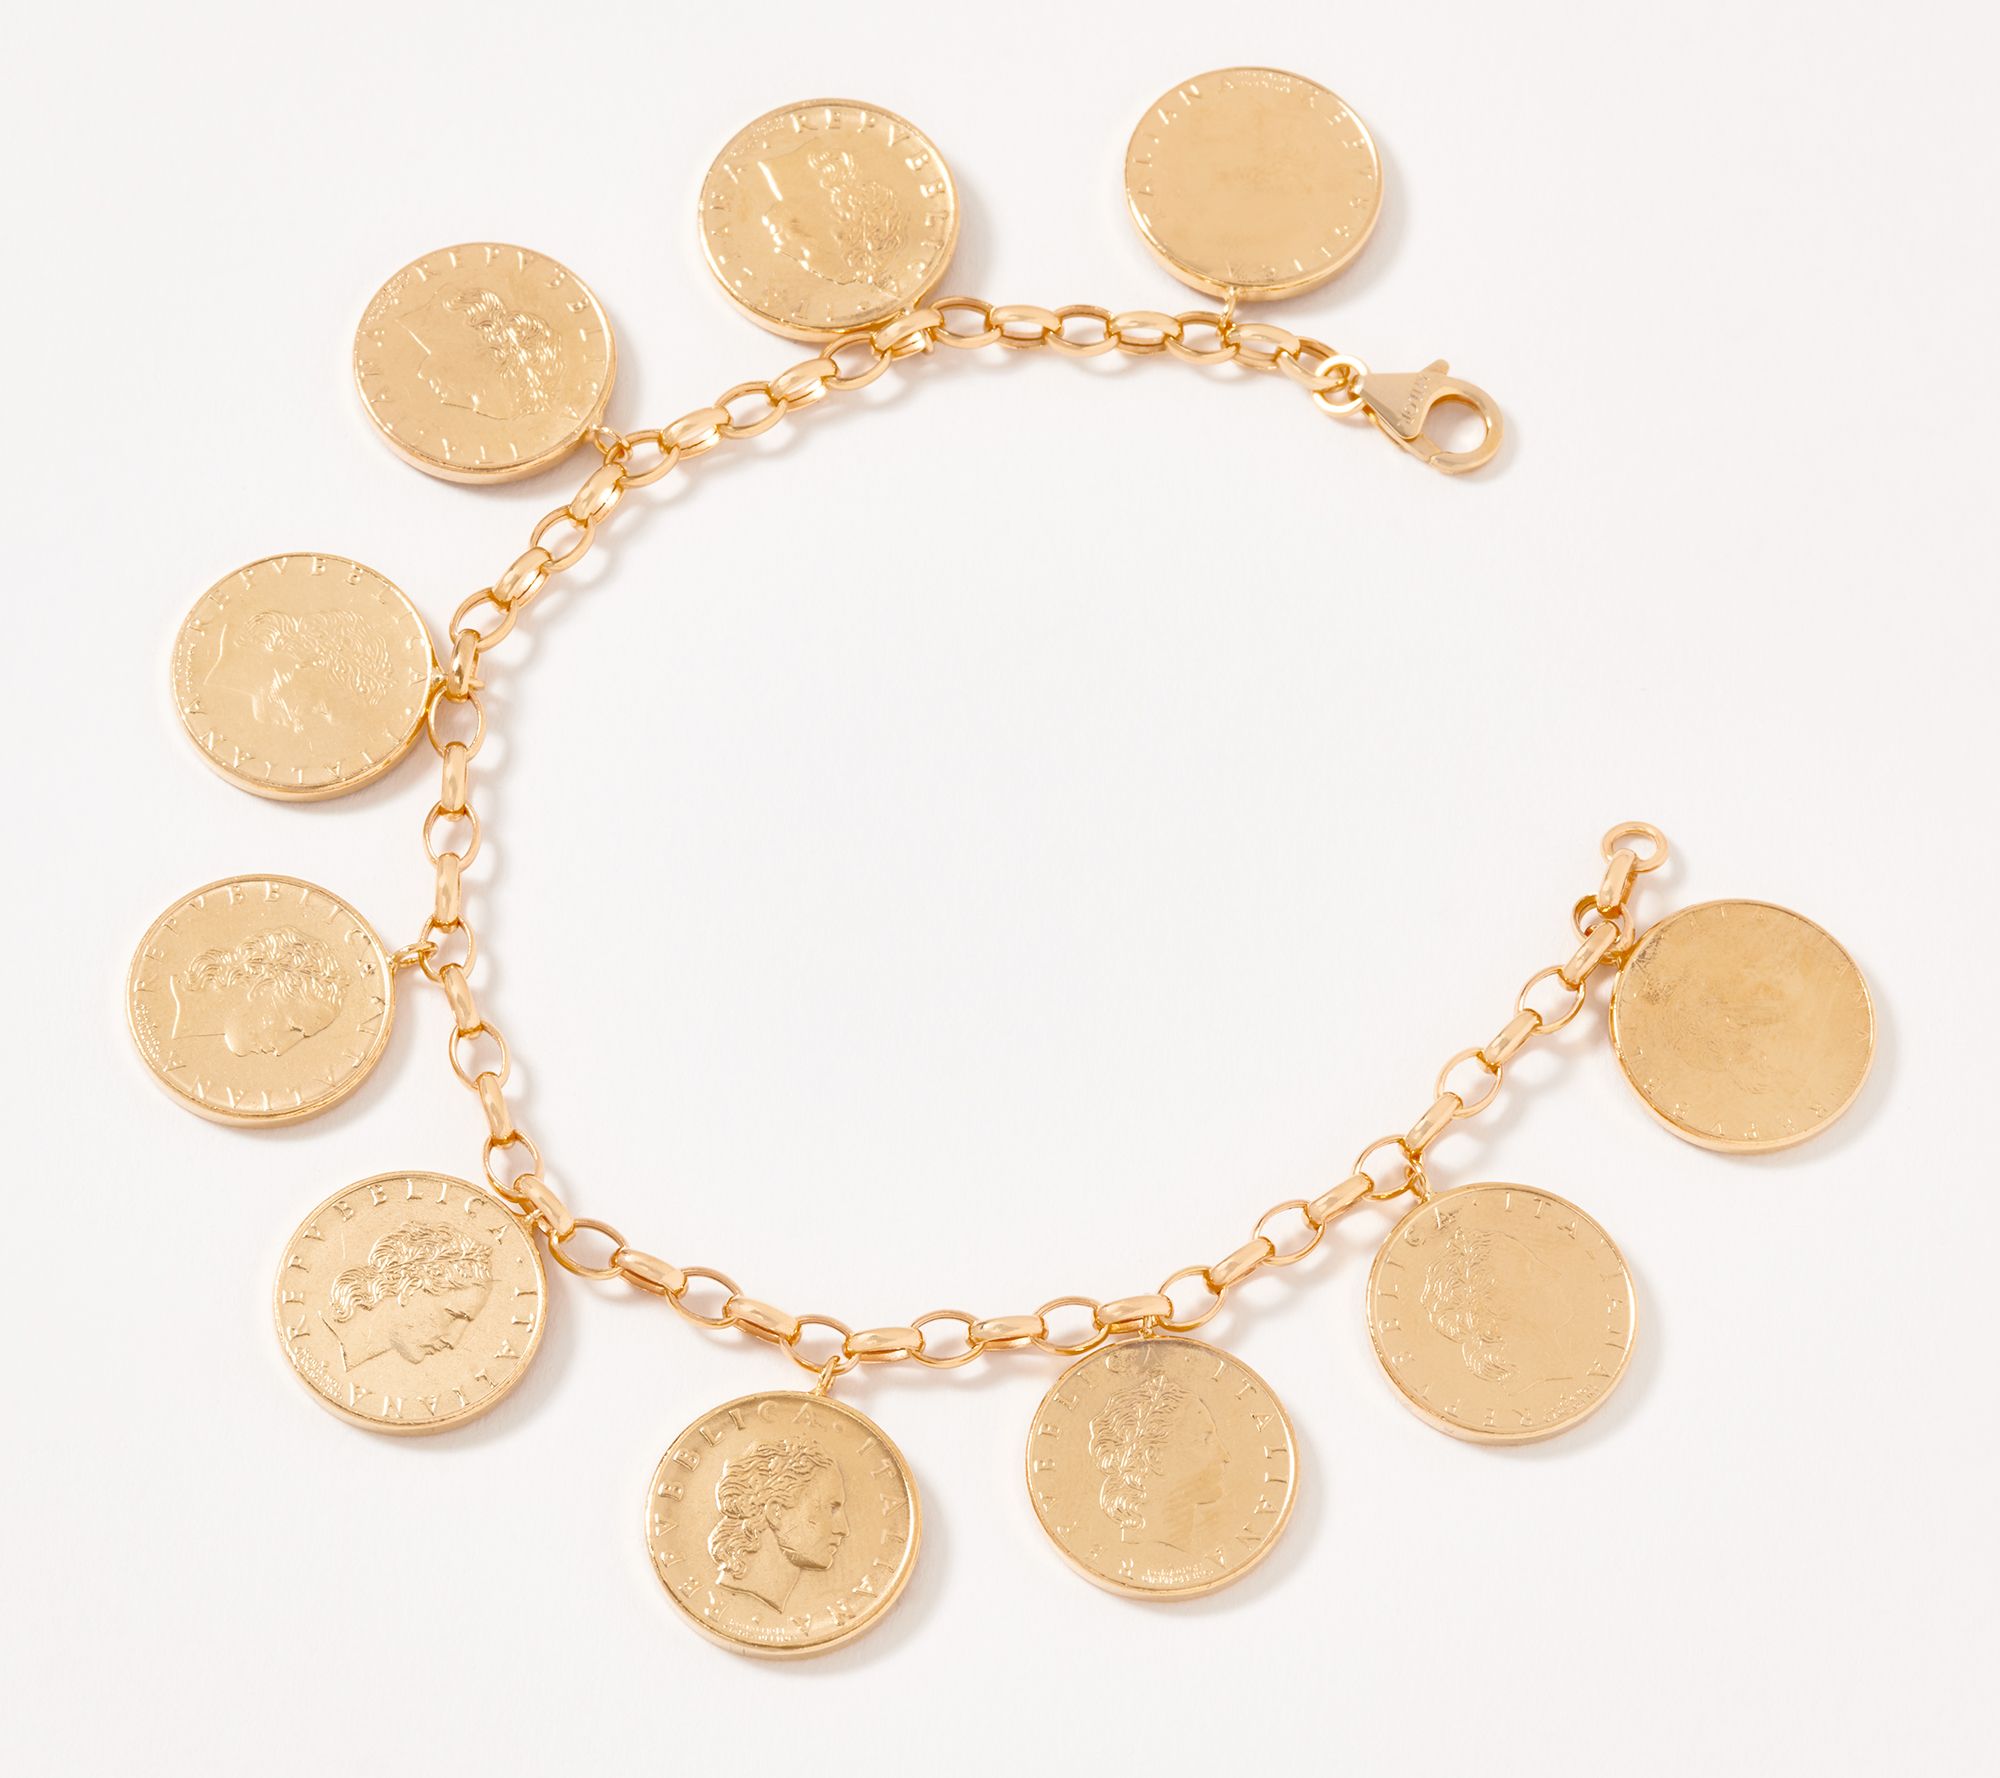 Charms Bracelet Gold / 8